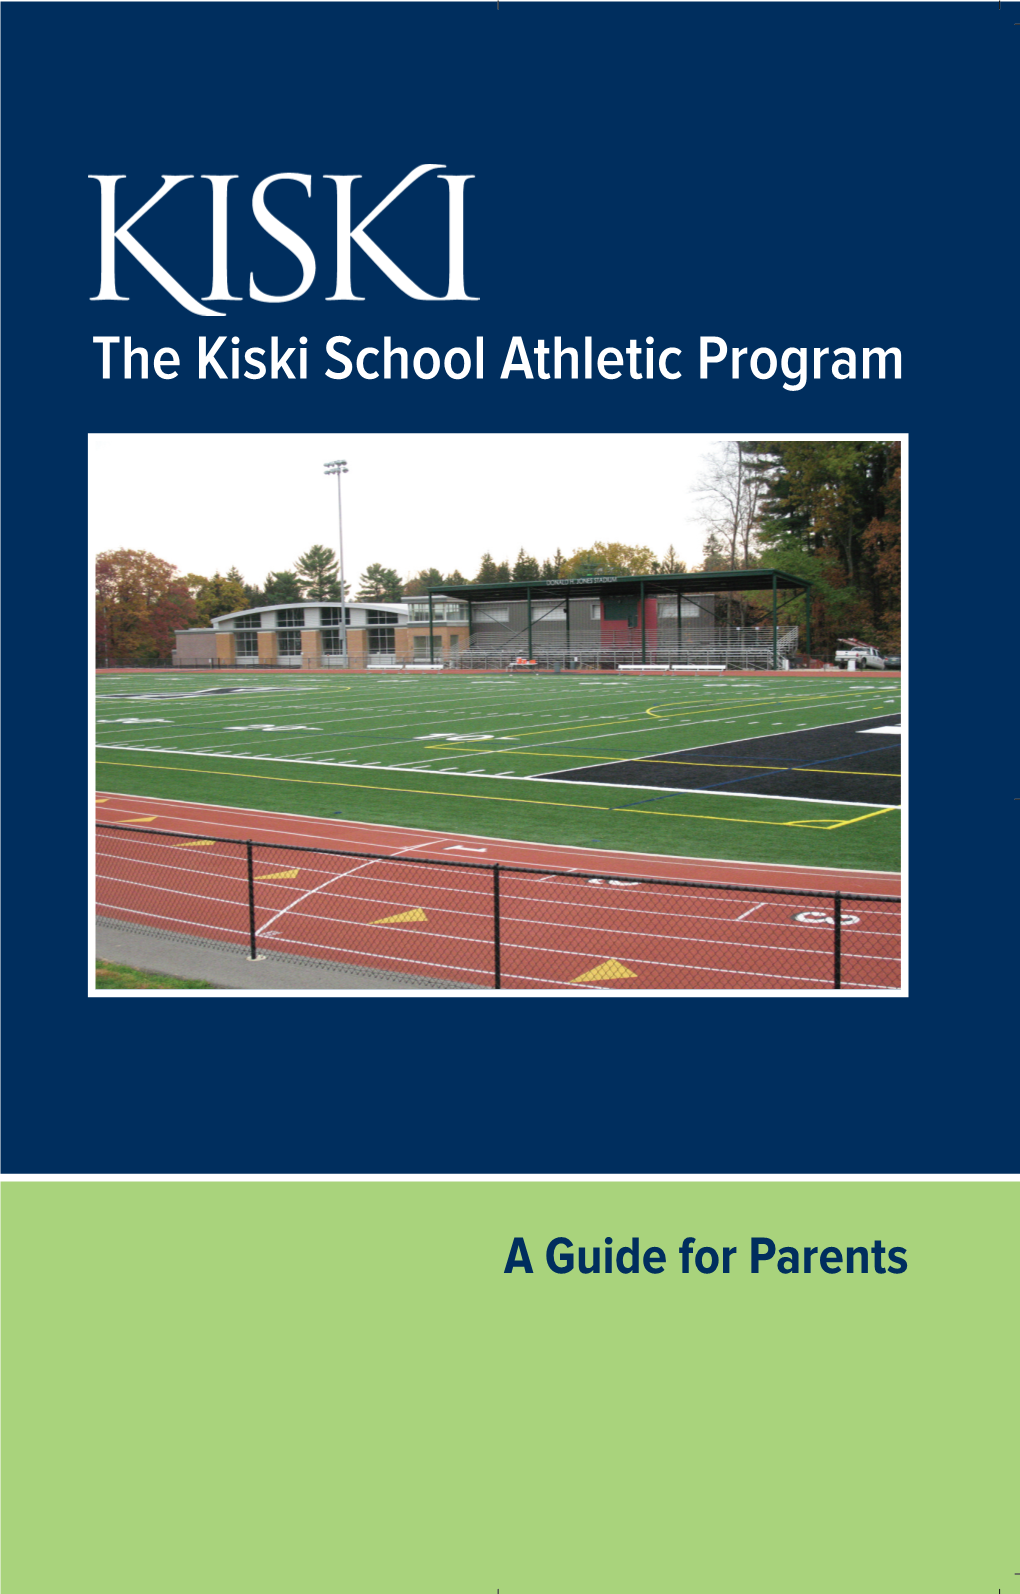 The Kiski School Athletic Program